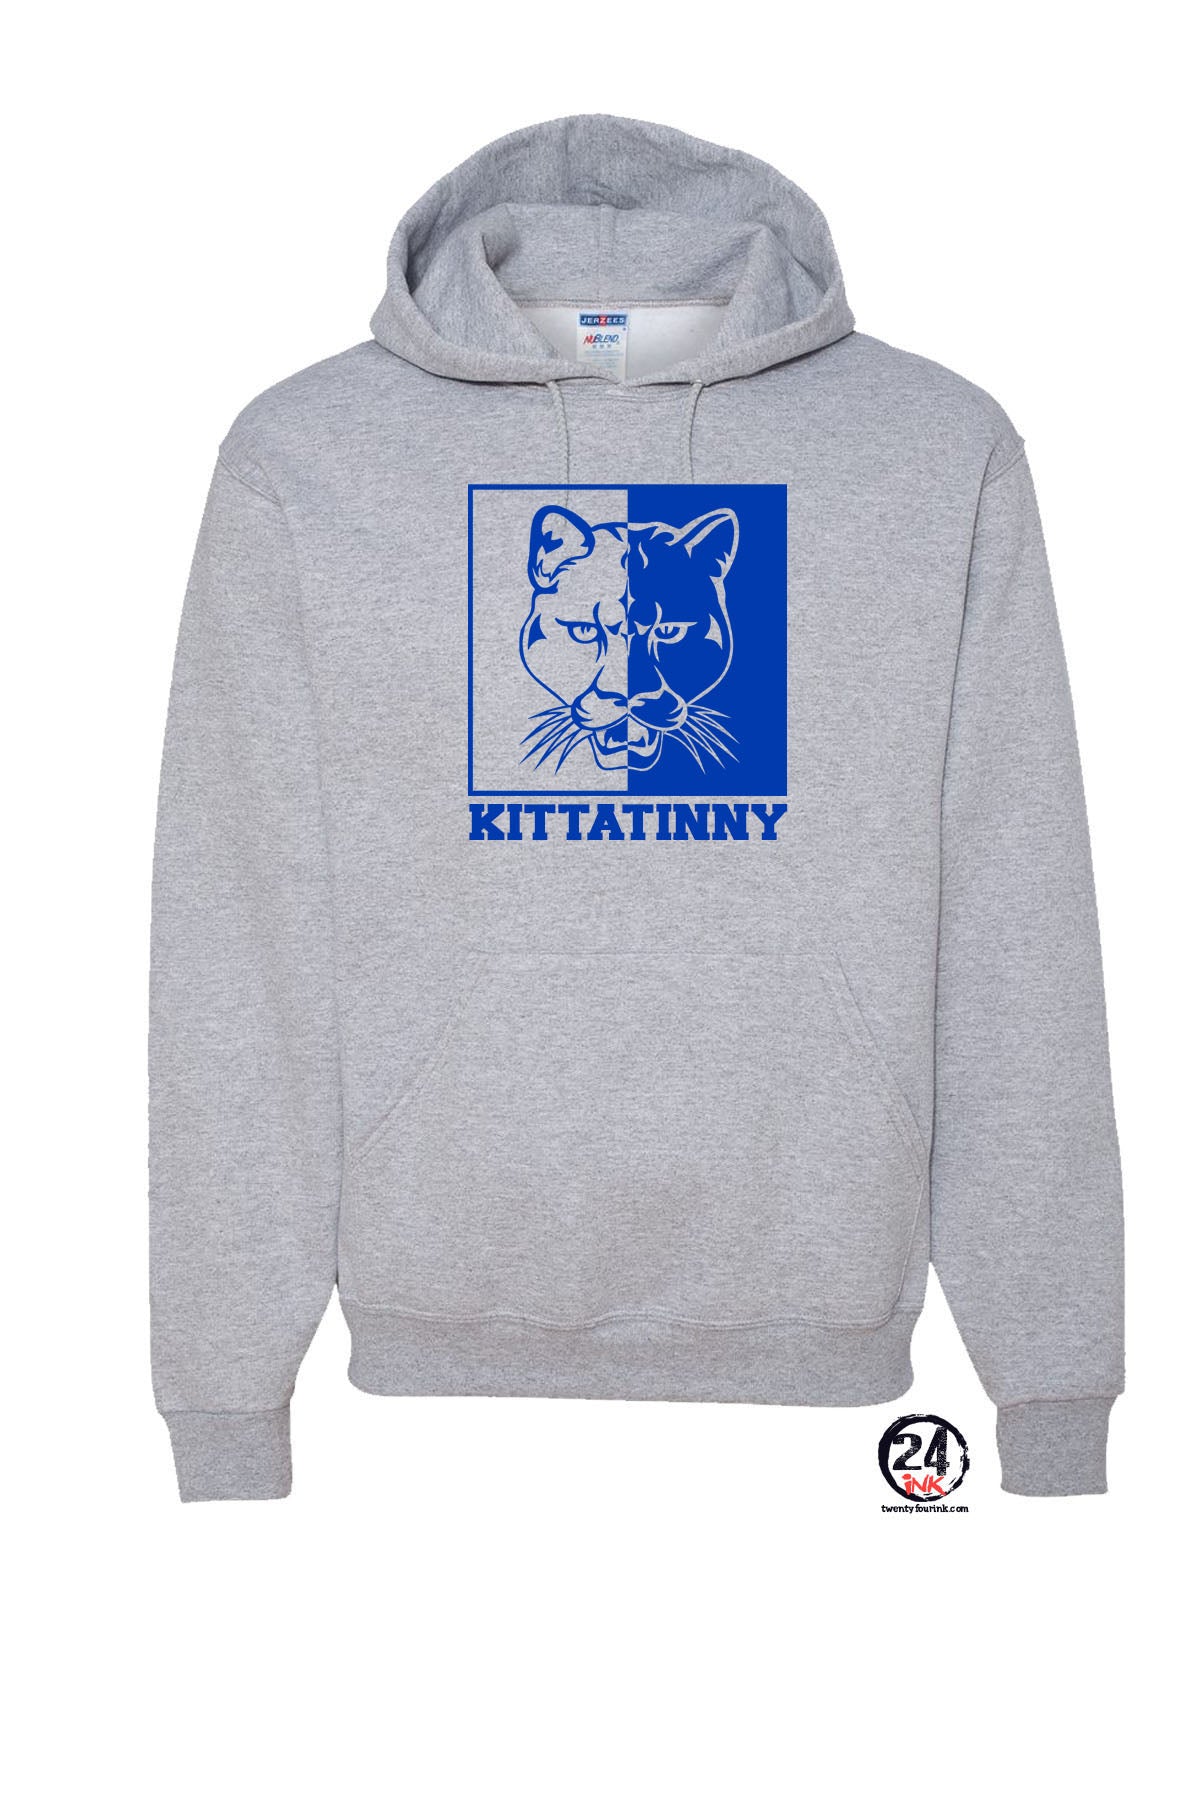 Kittatinny Cougars Hooded Sweatshirt